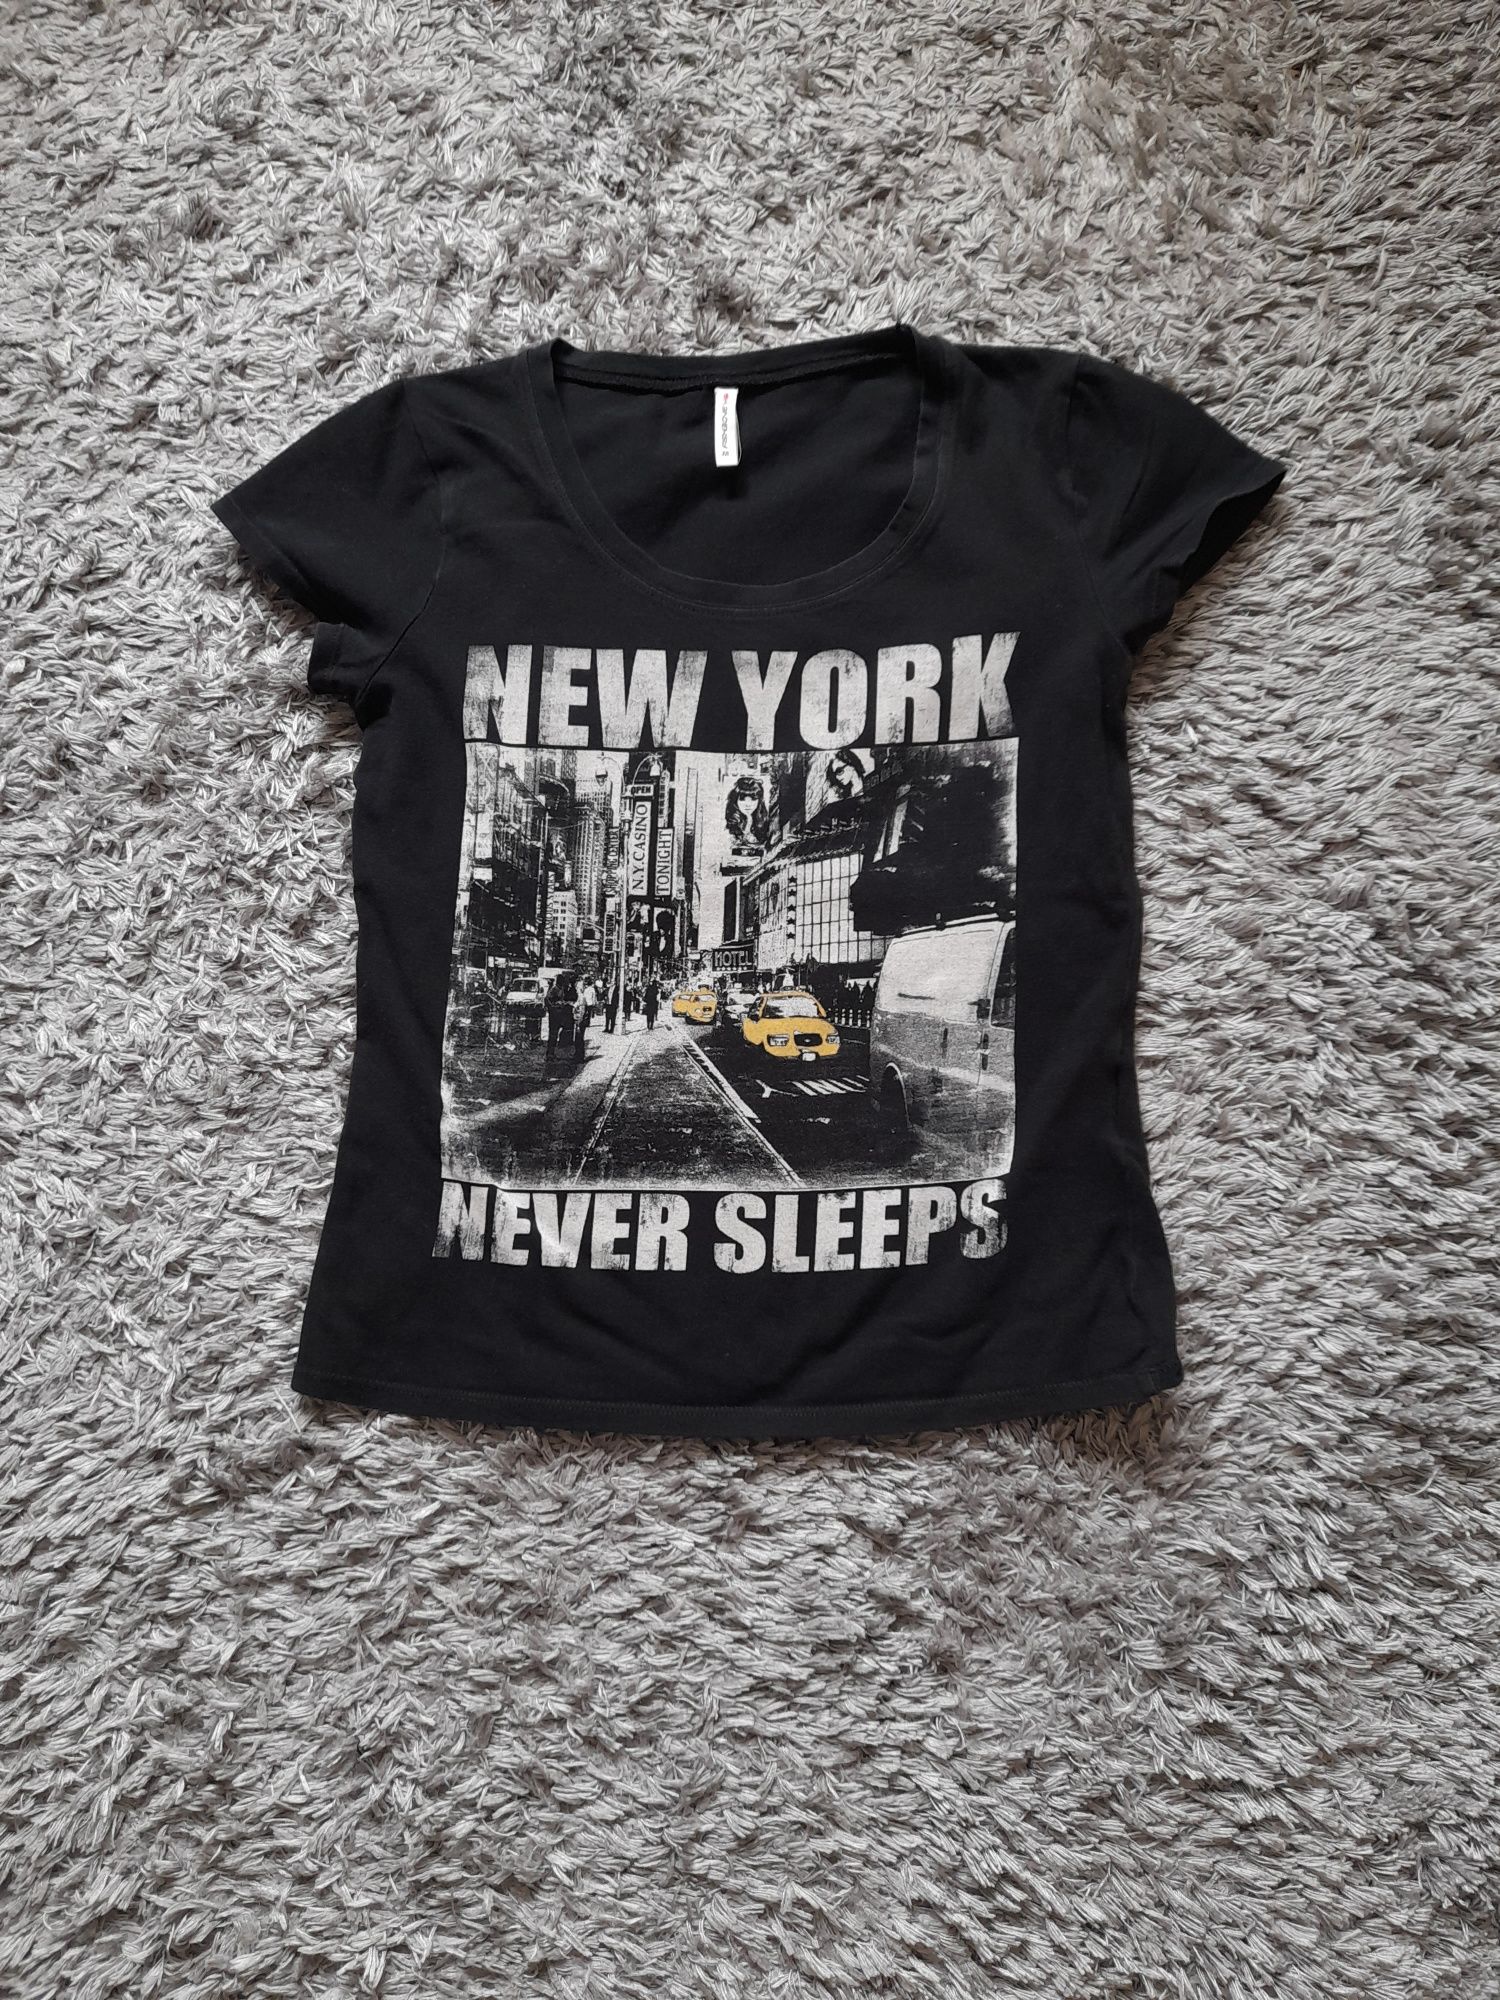 Czarna koszulka z nadrukiem New York. Rozmiar M. fish3one